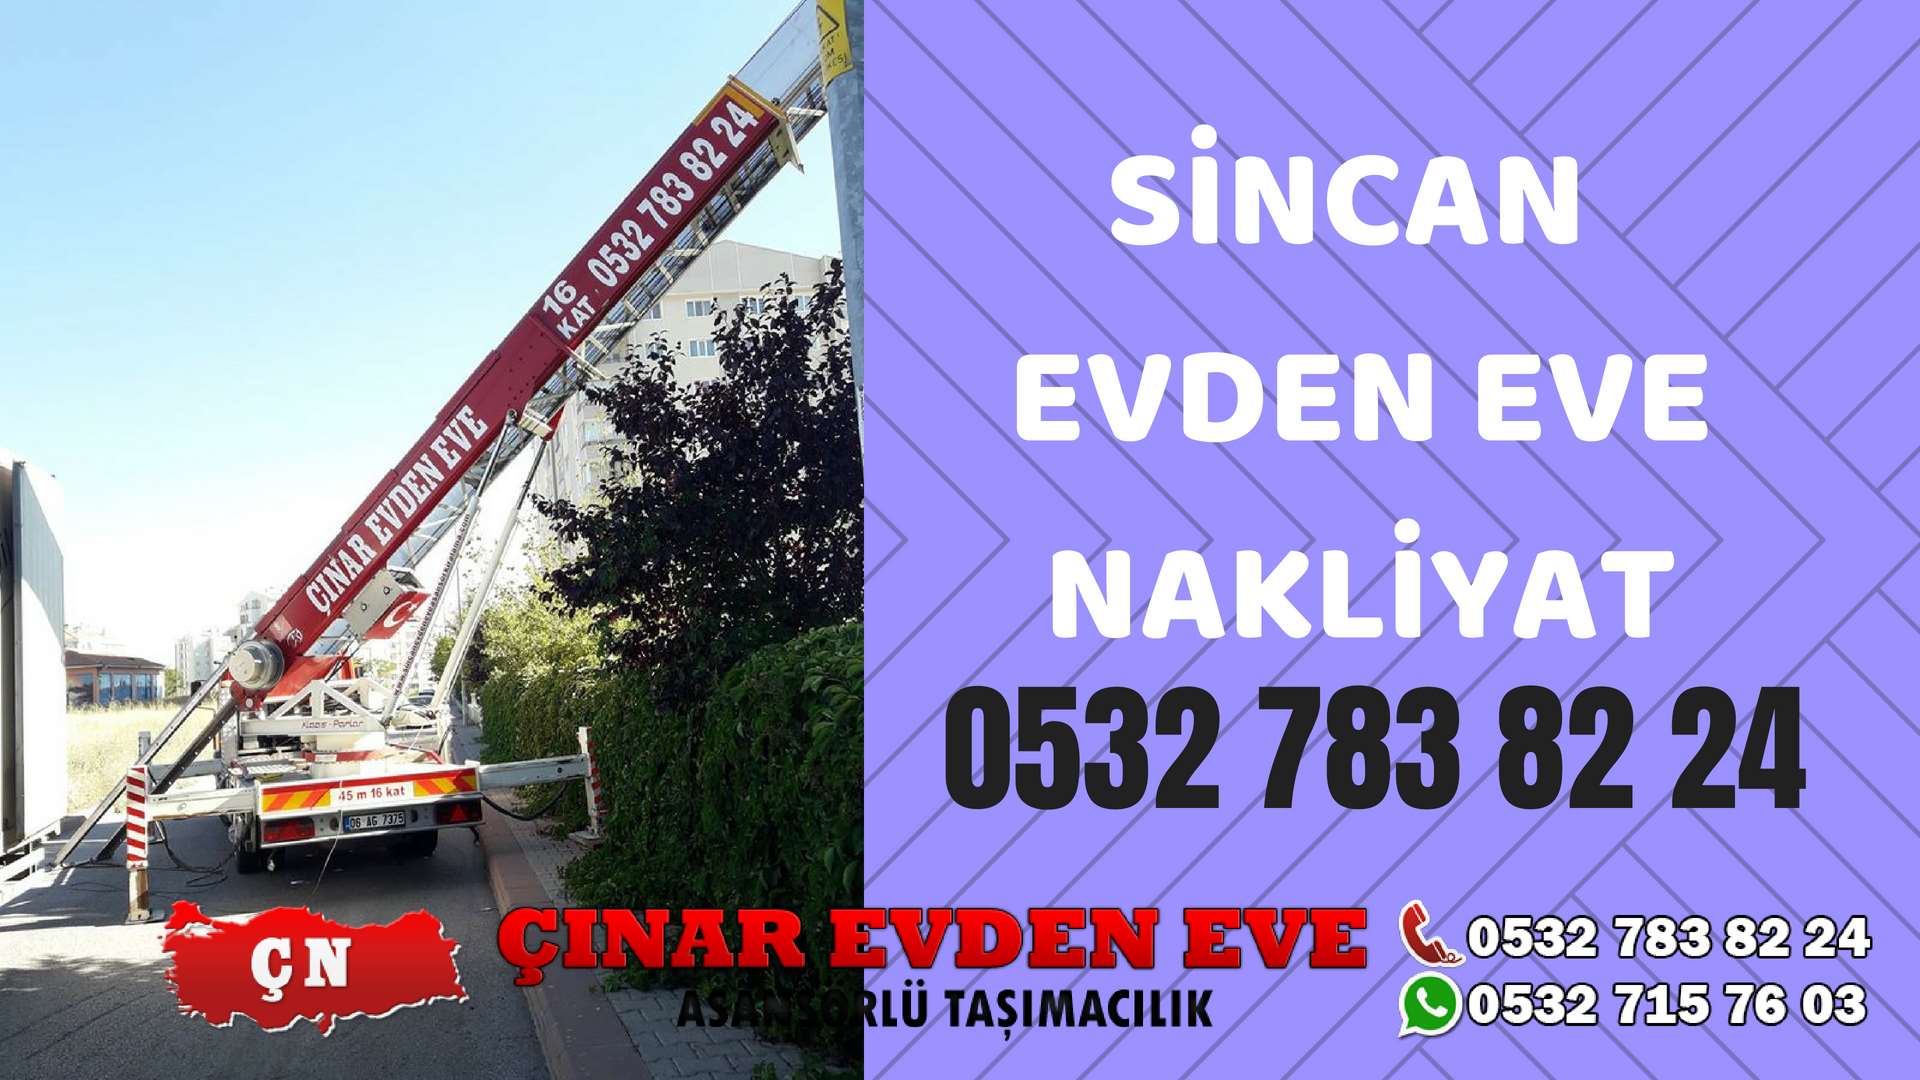 Ankara İvogsan Sincan Evden Eve Nakliyat, Asansörlü Taşıma Çınar Nakliyat Sincan 0532 715 76 03